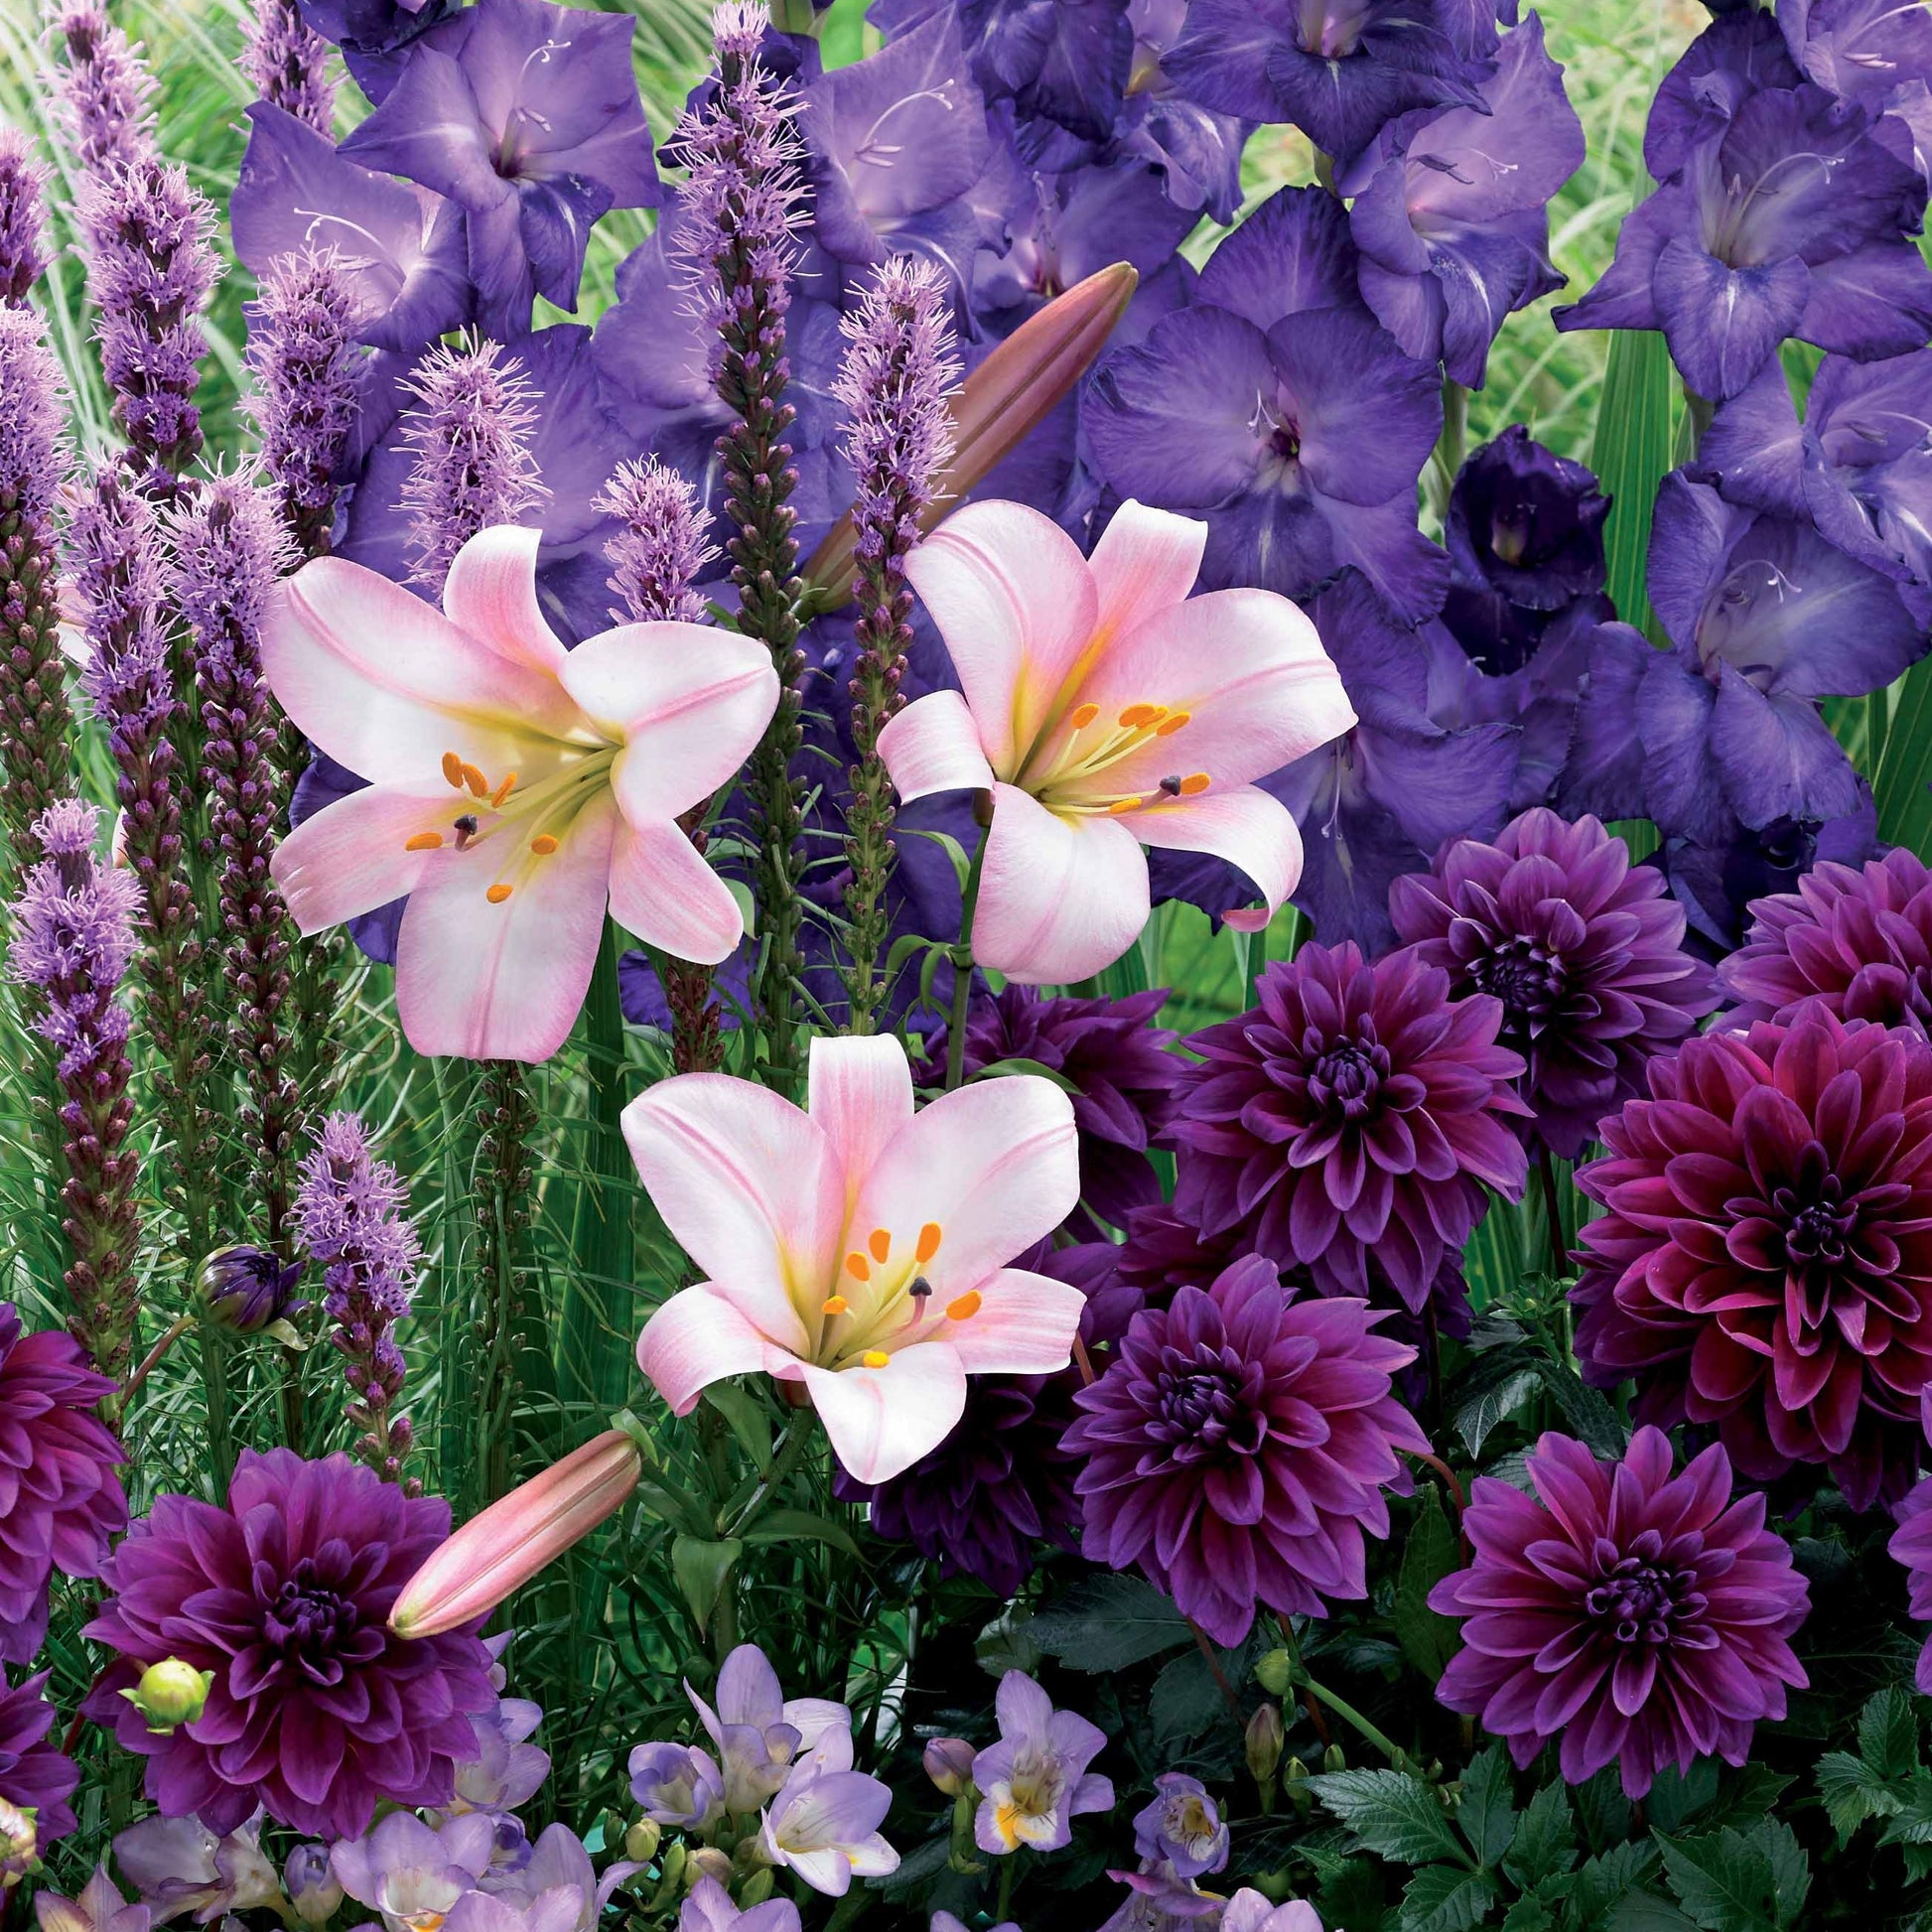 Sommerblumenzwiebel Mischung - Liatris, freesias,lis longiflorum,dahlia,gladiolus - Blumenzwiebeln Sommerblüher